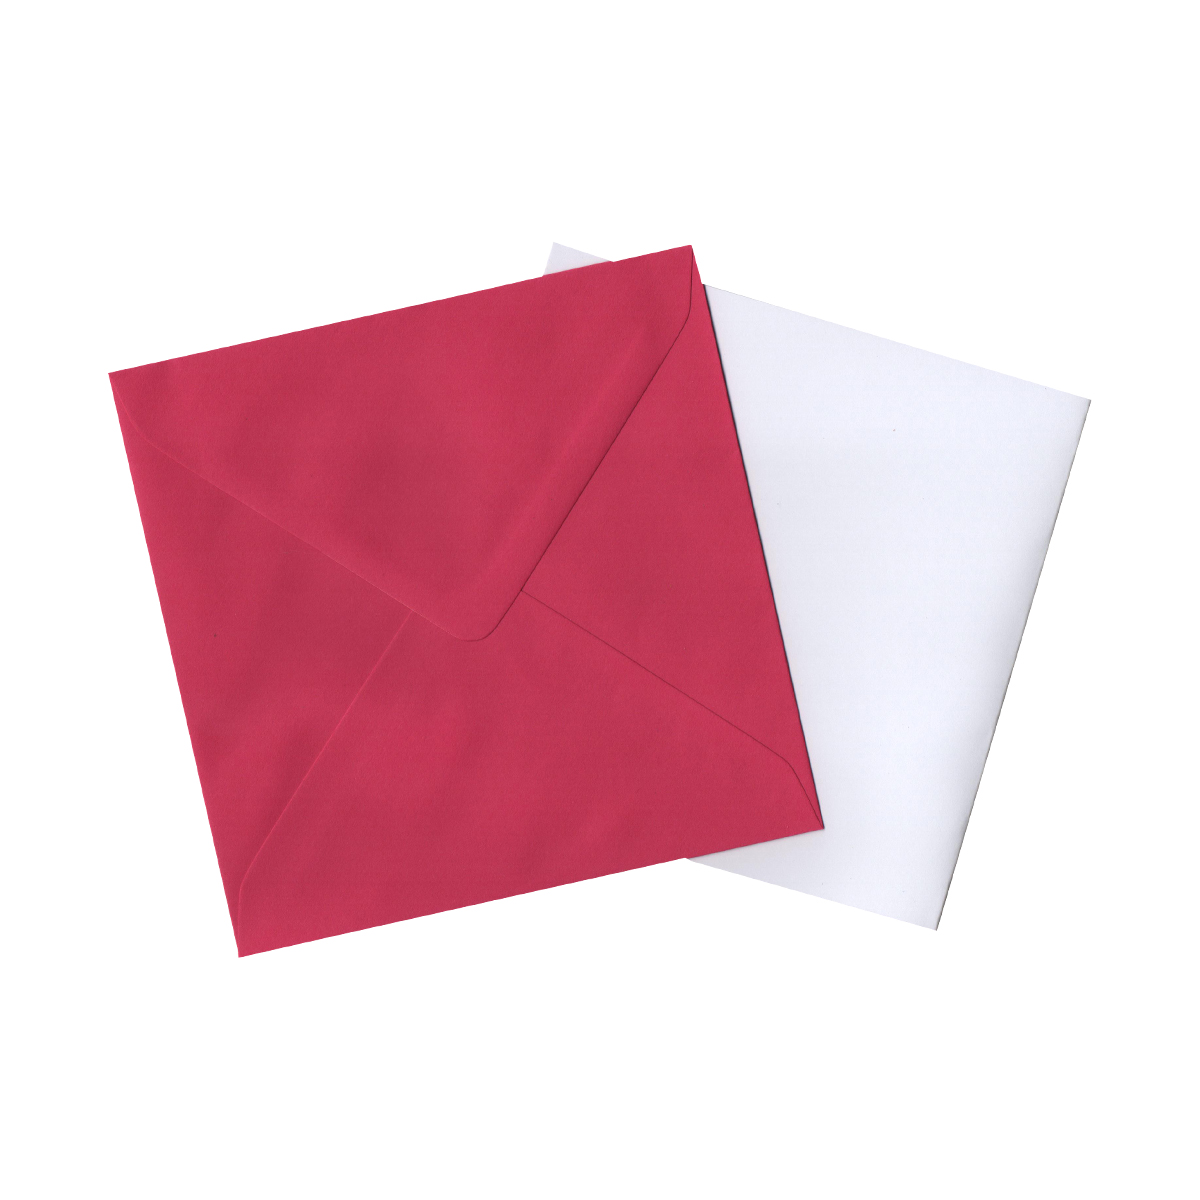 155mm Square Fuchsia Pink Envelopes &amp; White Card Blanks (Pack of 10)